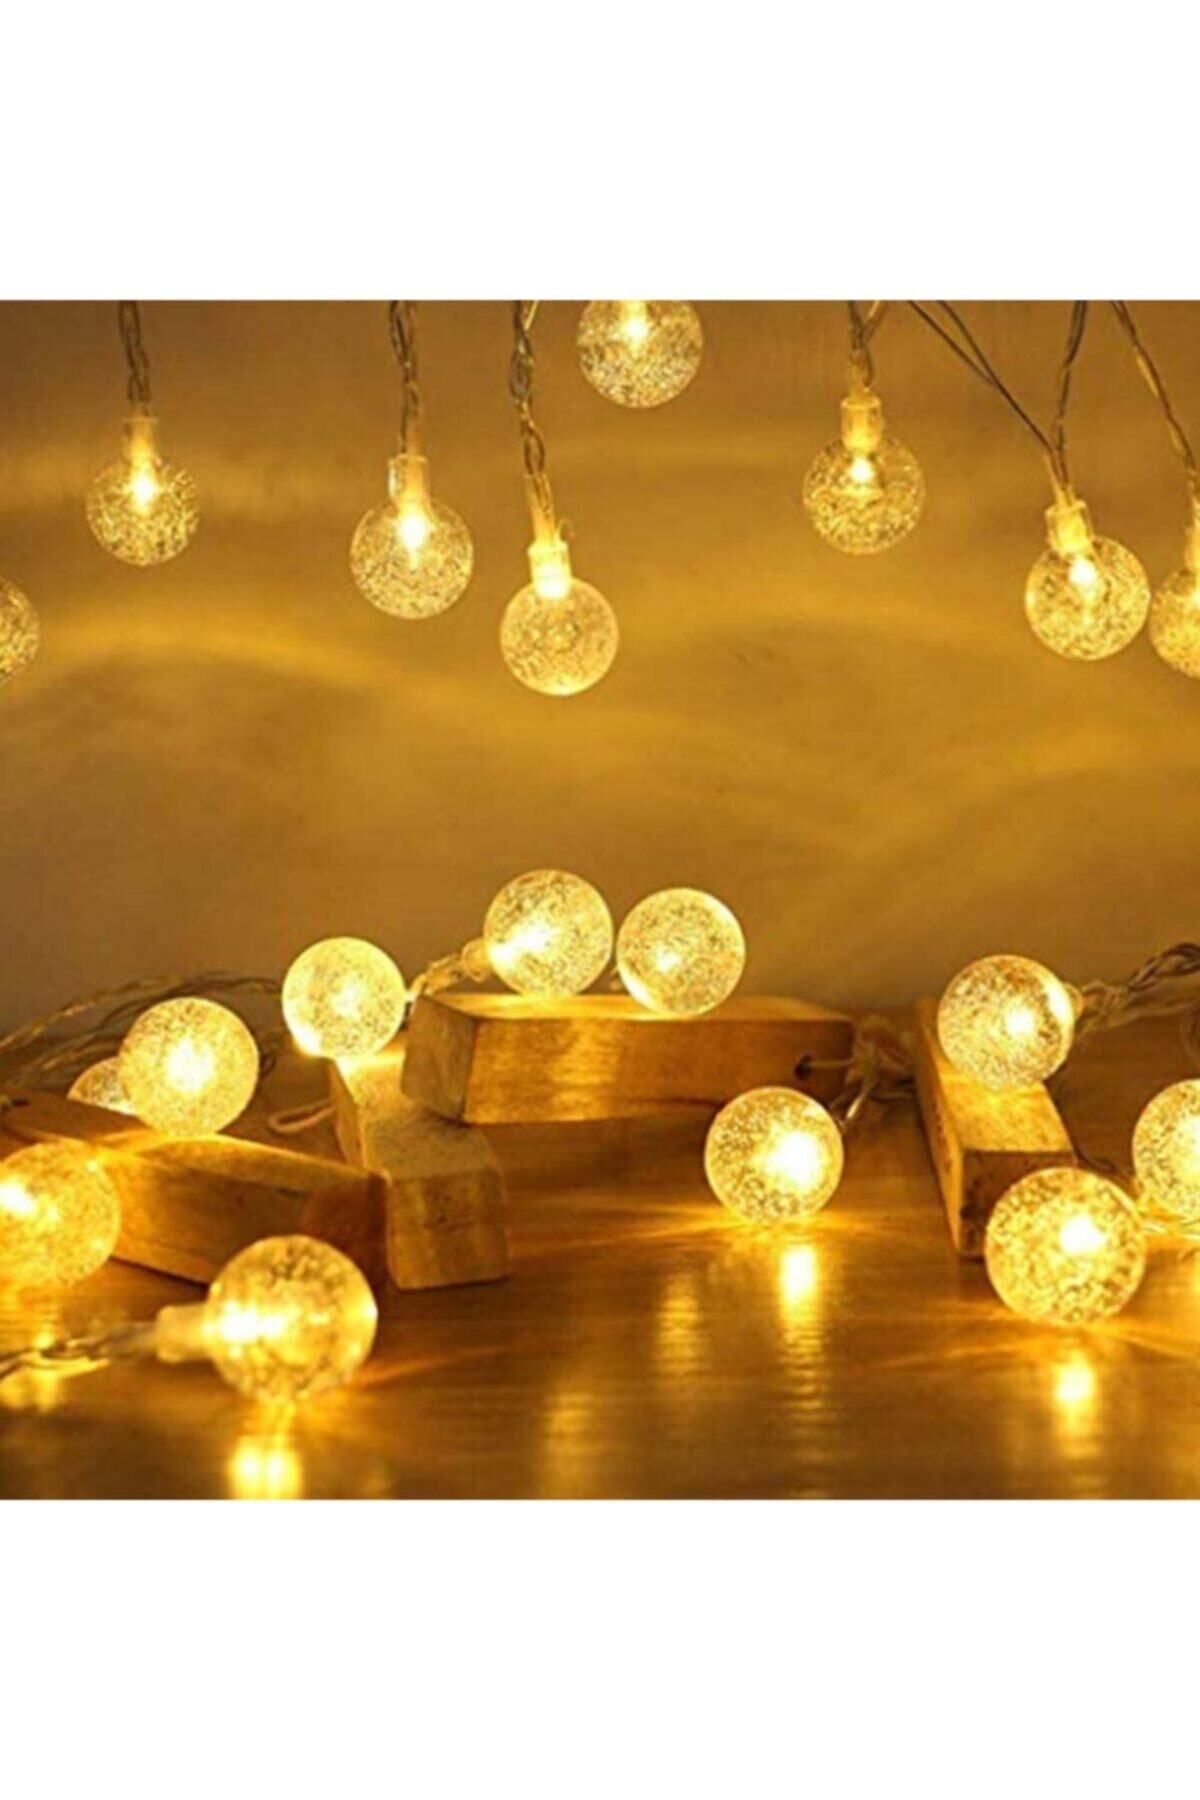 Lumenn Kristal Top Led Işık|10 Metre 100 Ledli 8 Modlu Fişli Şeffaf Kablolu Gün Işığı Dekoratif Aydınlatma